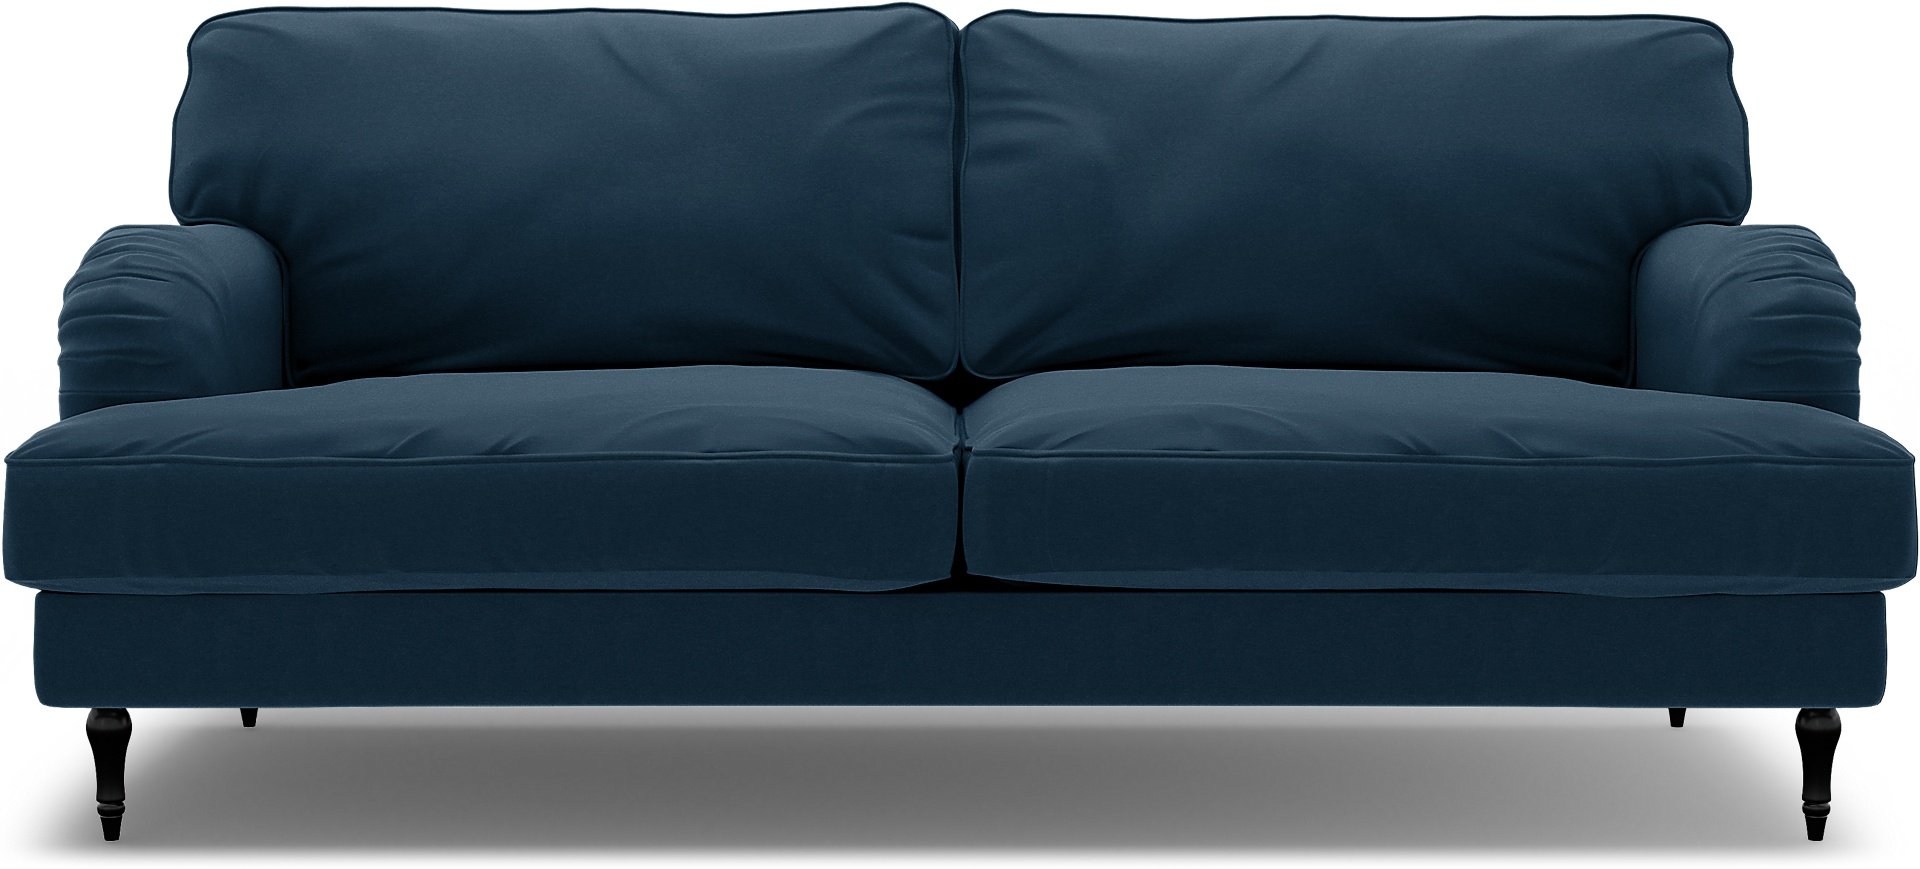 IKEA - Stocksund 3 Seater Sofa Cover, Midnight, Velvet - Bemz